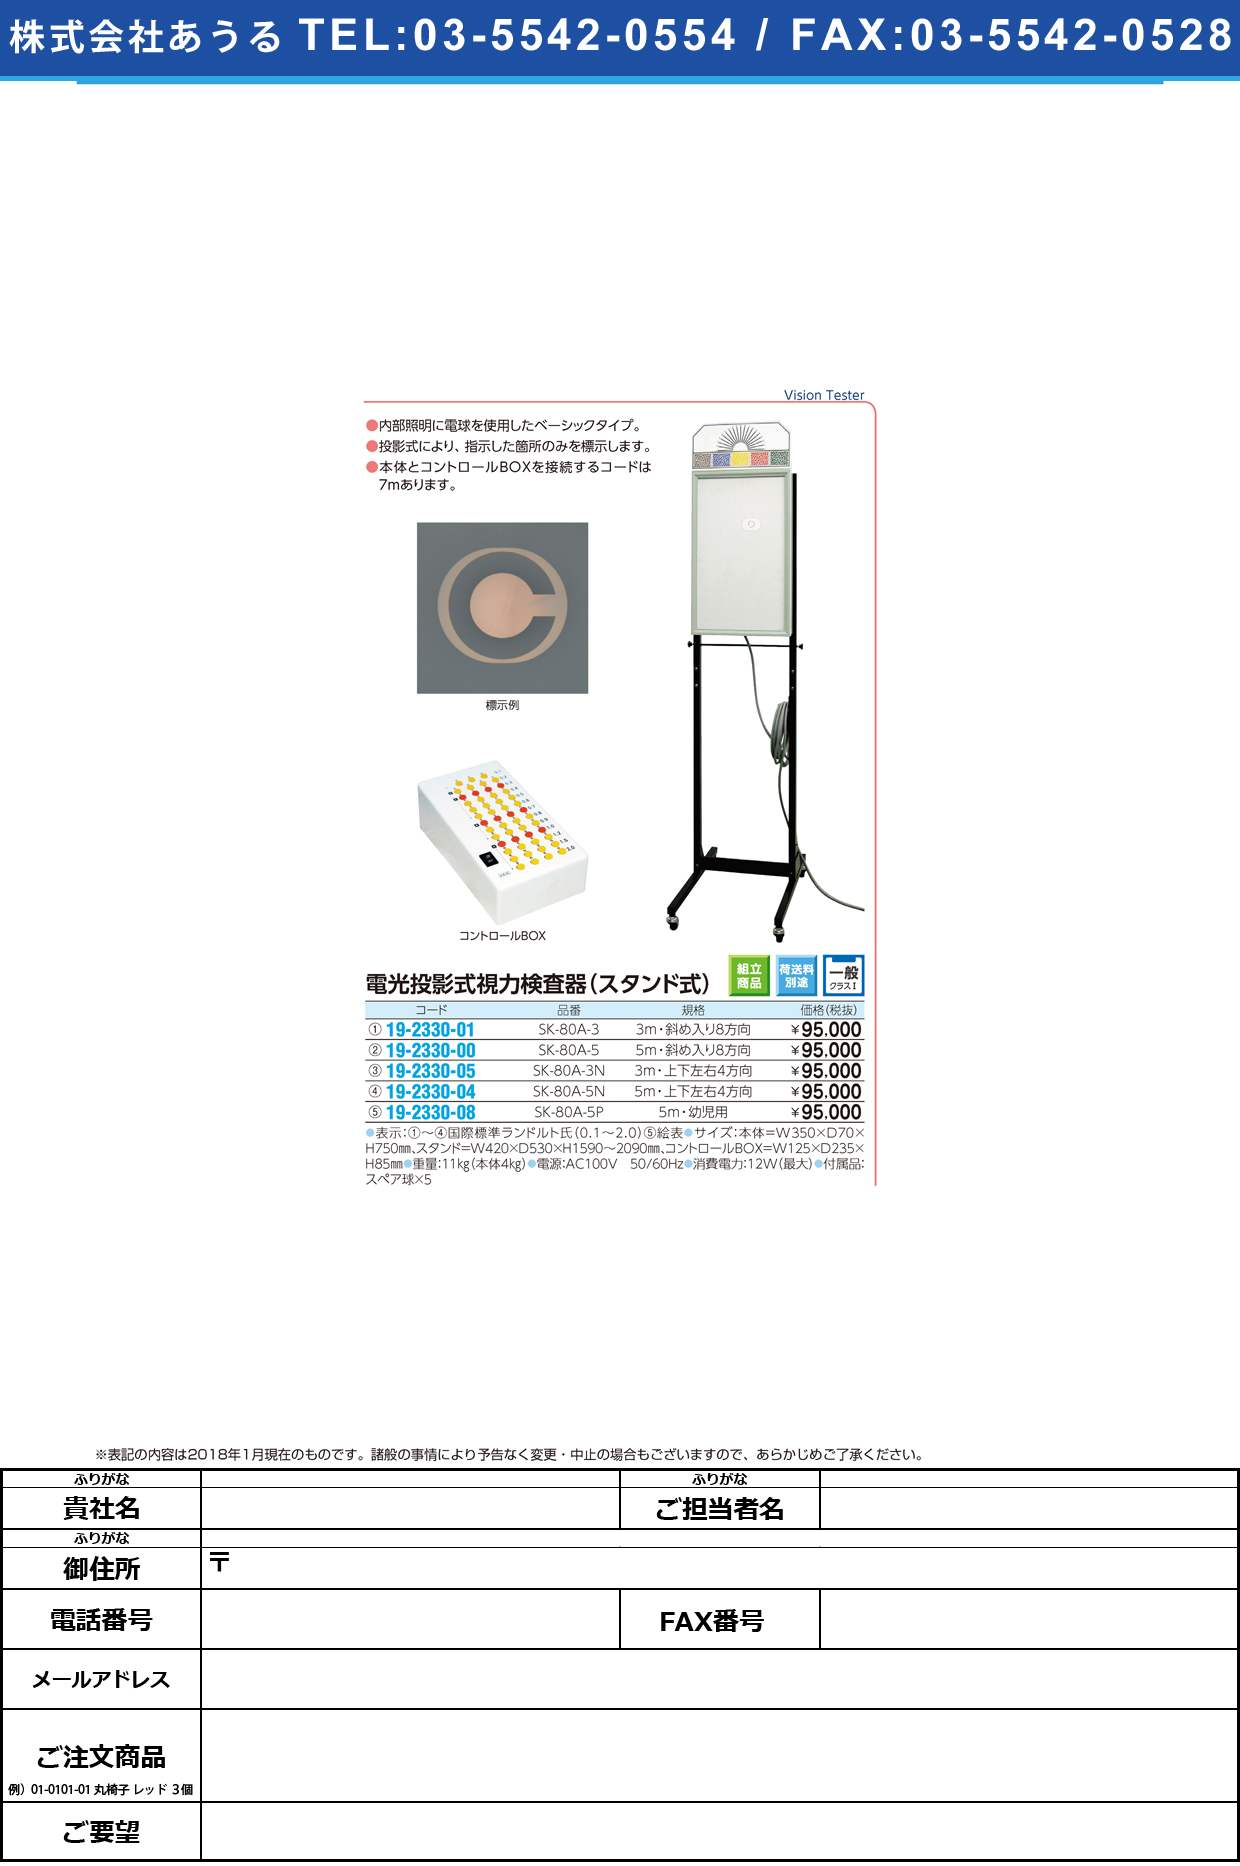 (19-2330-08)電光投影式視力検査器絵表スタンド式 SK-80A-5P(5Mﾖｳ) ﾃﾞﾝｺｳｼﾘｮｸｹﾝｻｷｴﾋｮｳ【1台単位】【2018年カタログ商品】